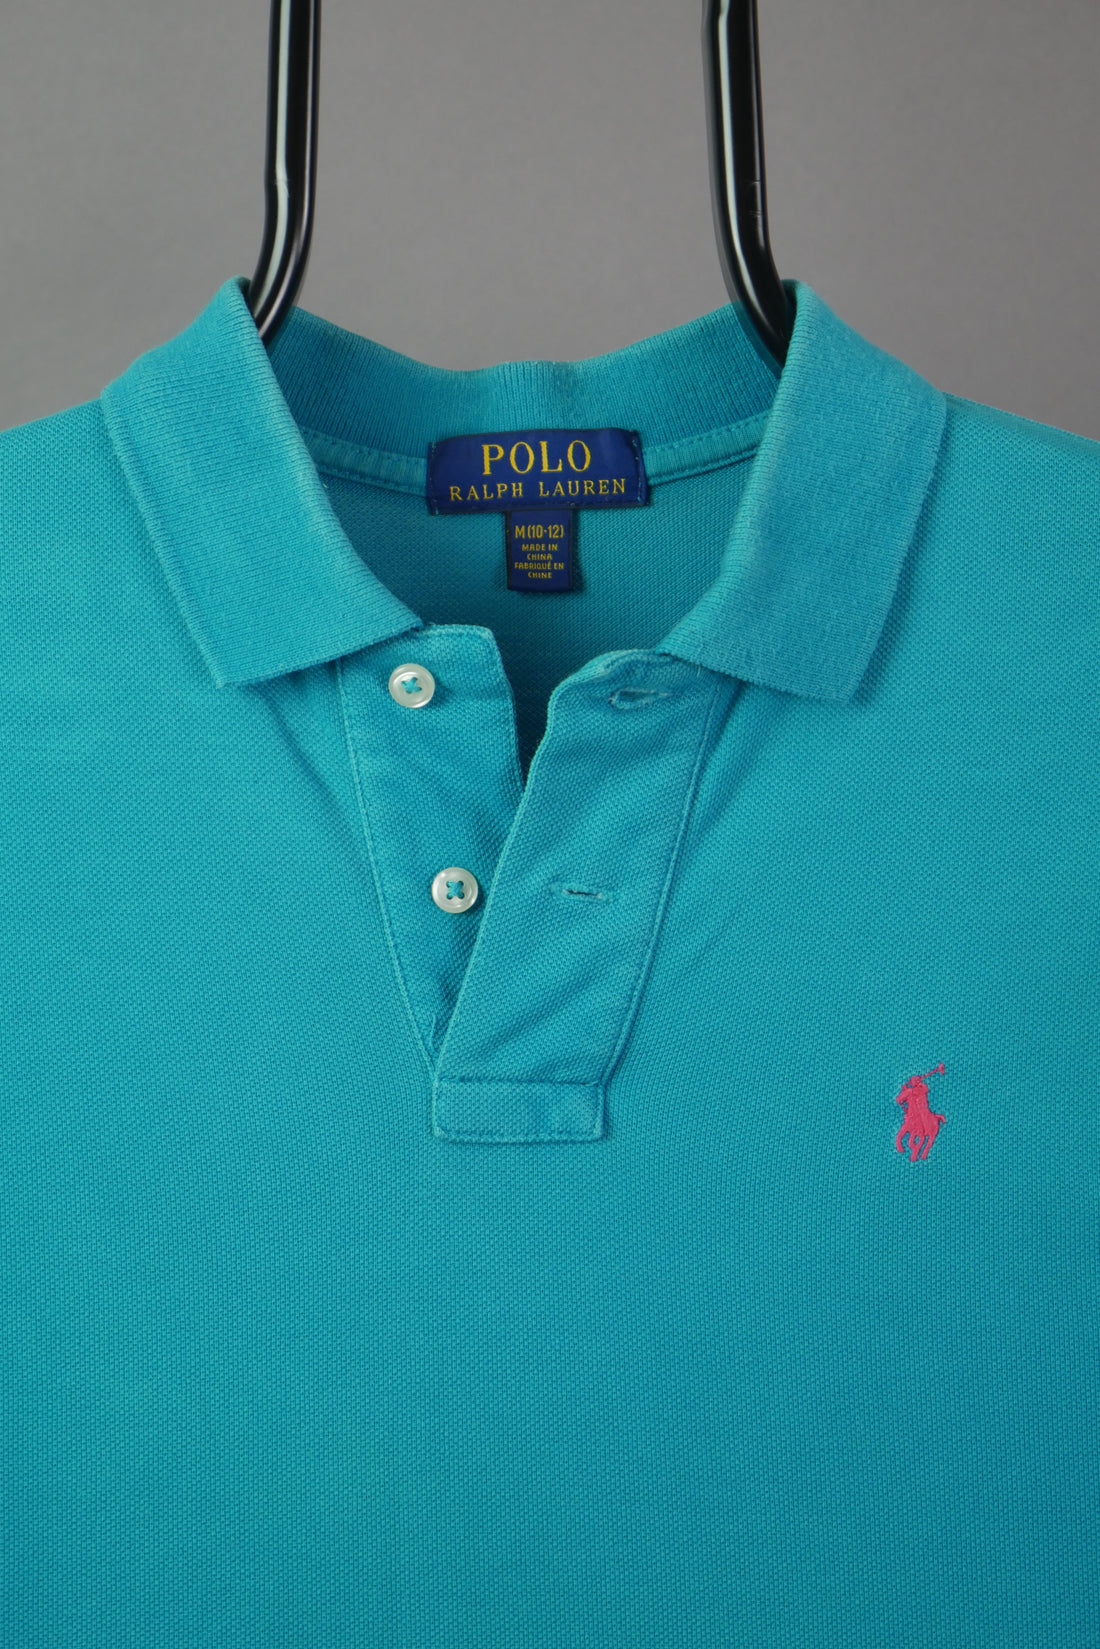 The Ralph Lauren Polo Shirt (Women's XS)